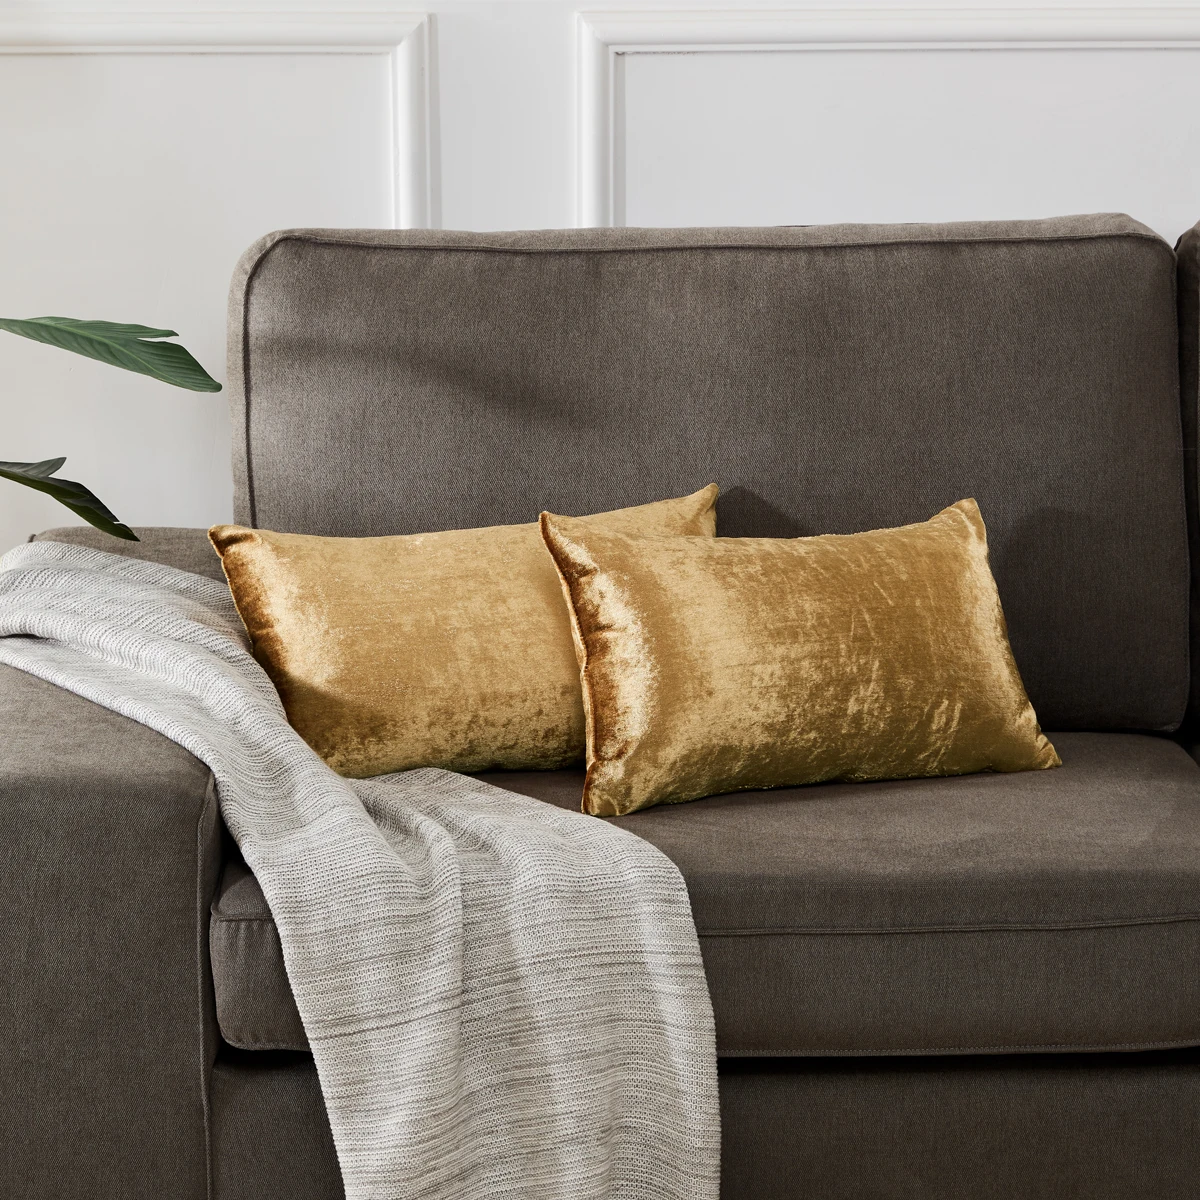 Домашний декор бархатные квадратные прямоугольные поясничные подушки для дивана золотисто-желтые подушки с наполнением для спальни подушки для дивана